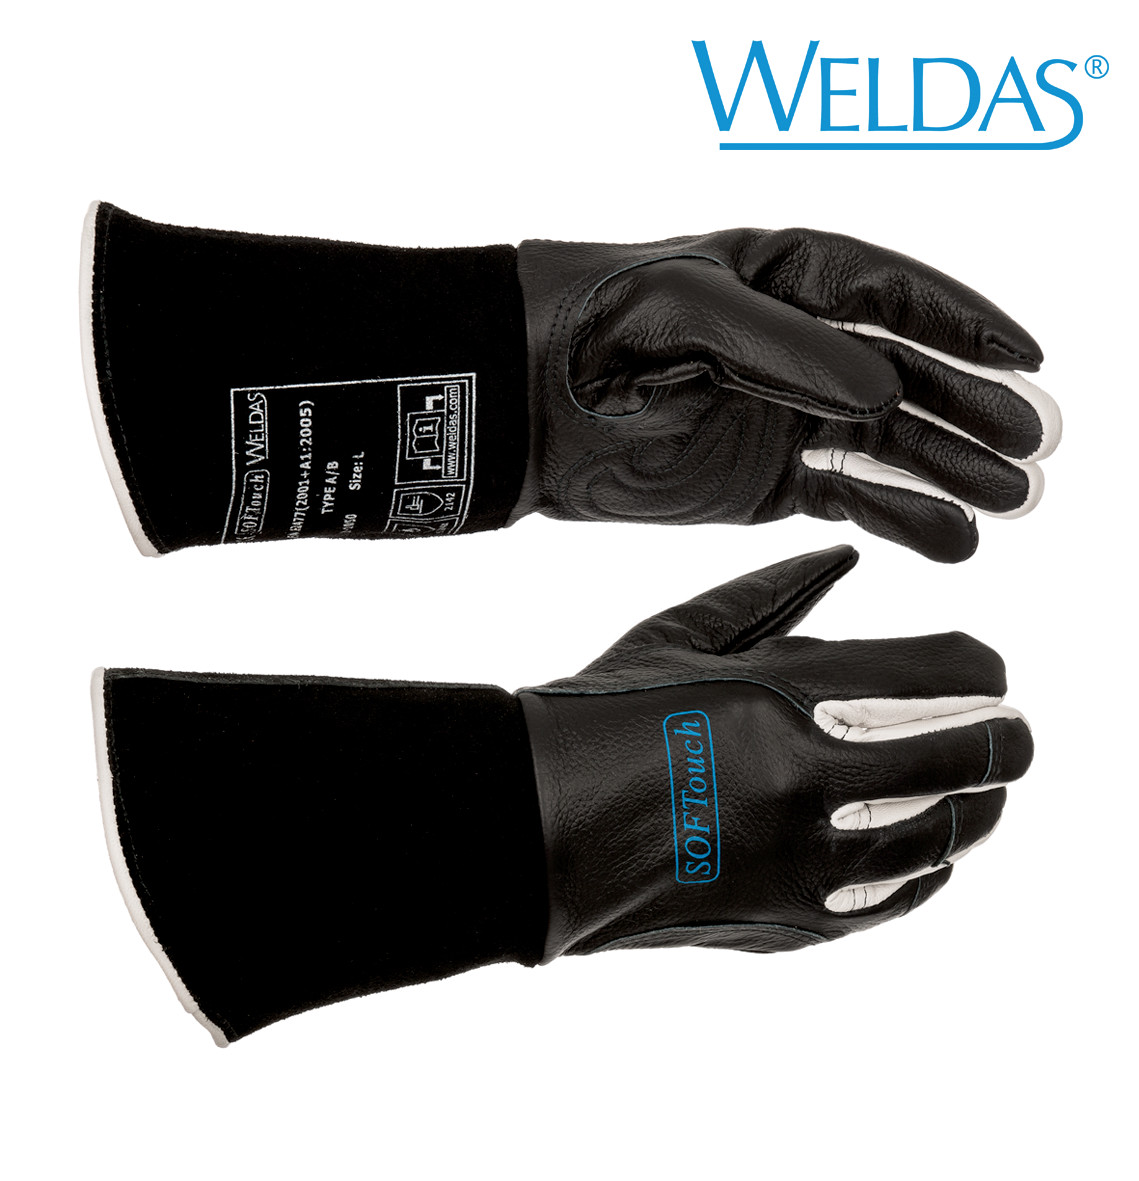 WIG Handschuhe "Softouch" schweißen Arbeitshandschuhe von Weldas Leder 